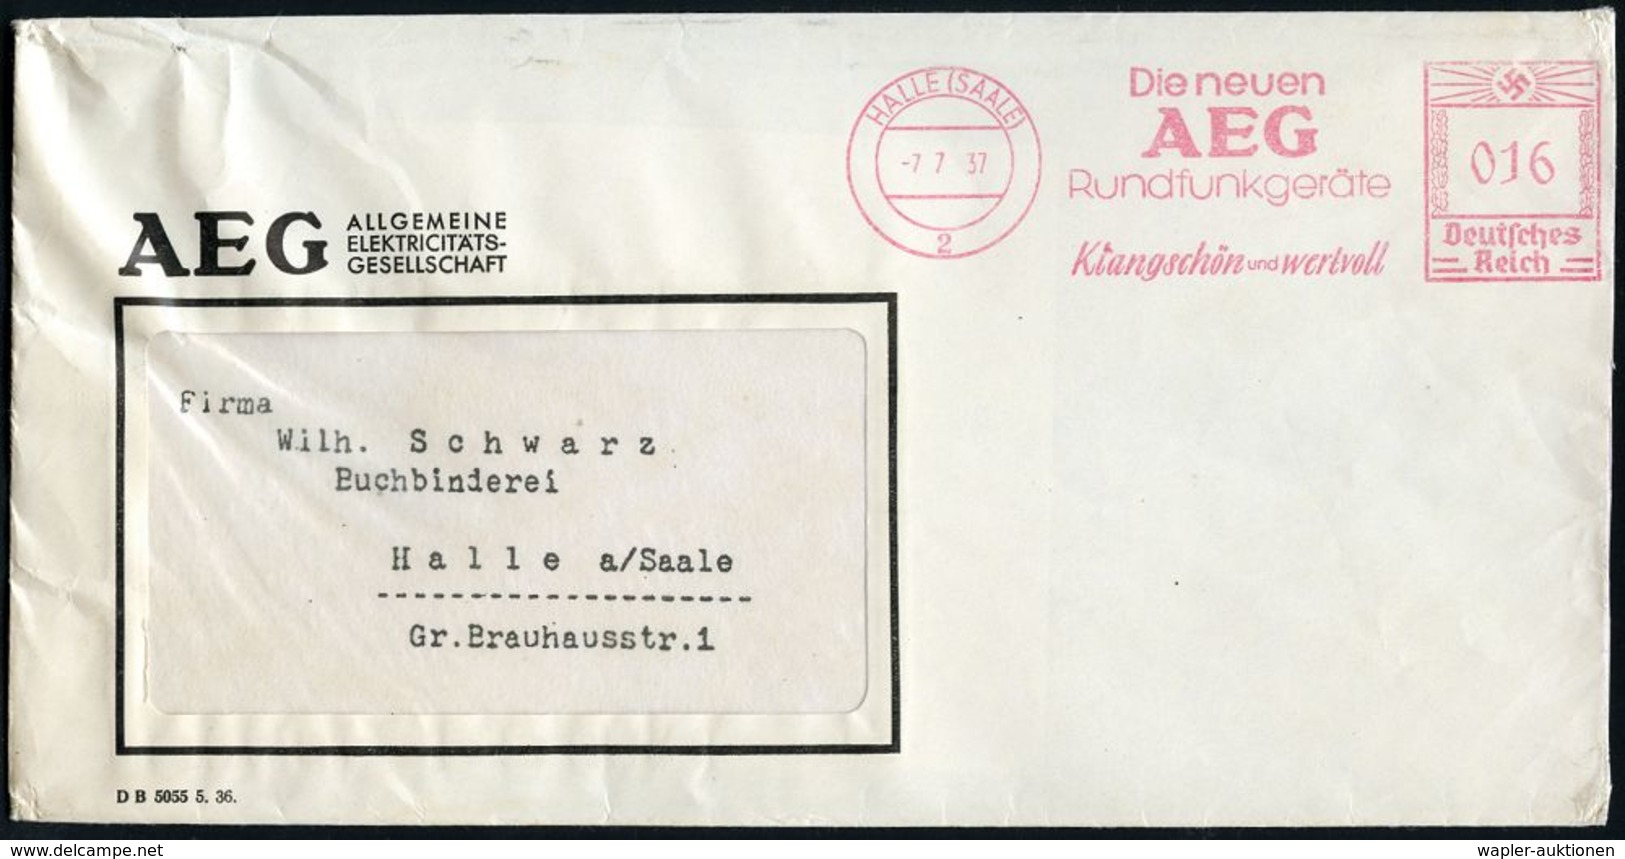 MUSIK ALLGEMEIN : HALLE (SAALE)/ 2/ Die Neuen/ AEG/ Rundfunkgeräte/ Klangschön U.wertvoll 1937 (7.7.) AFS Klar Auf AEG-F - Musica